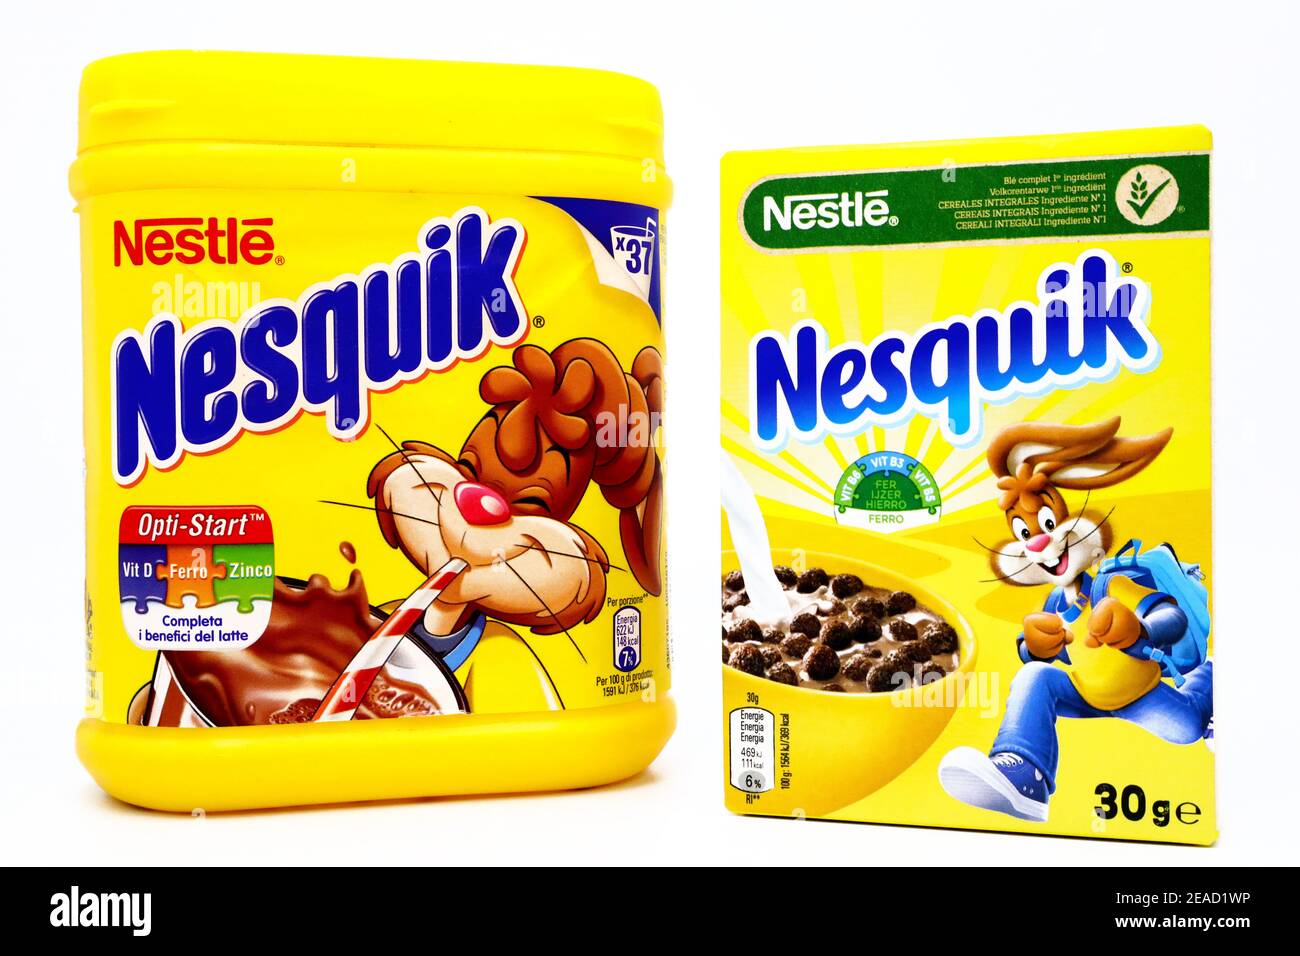 Nestlé Nesquik Cereals, Brand